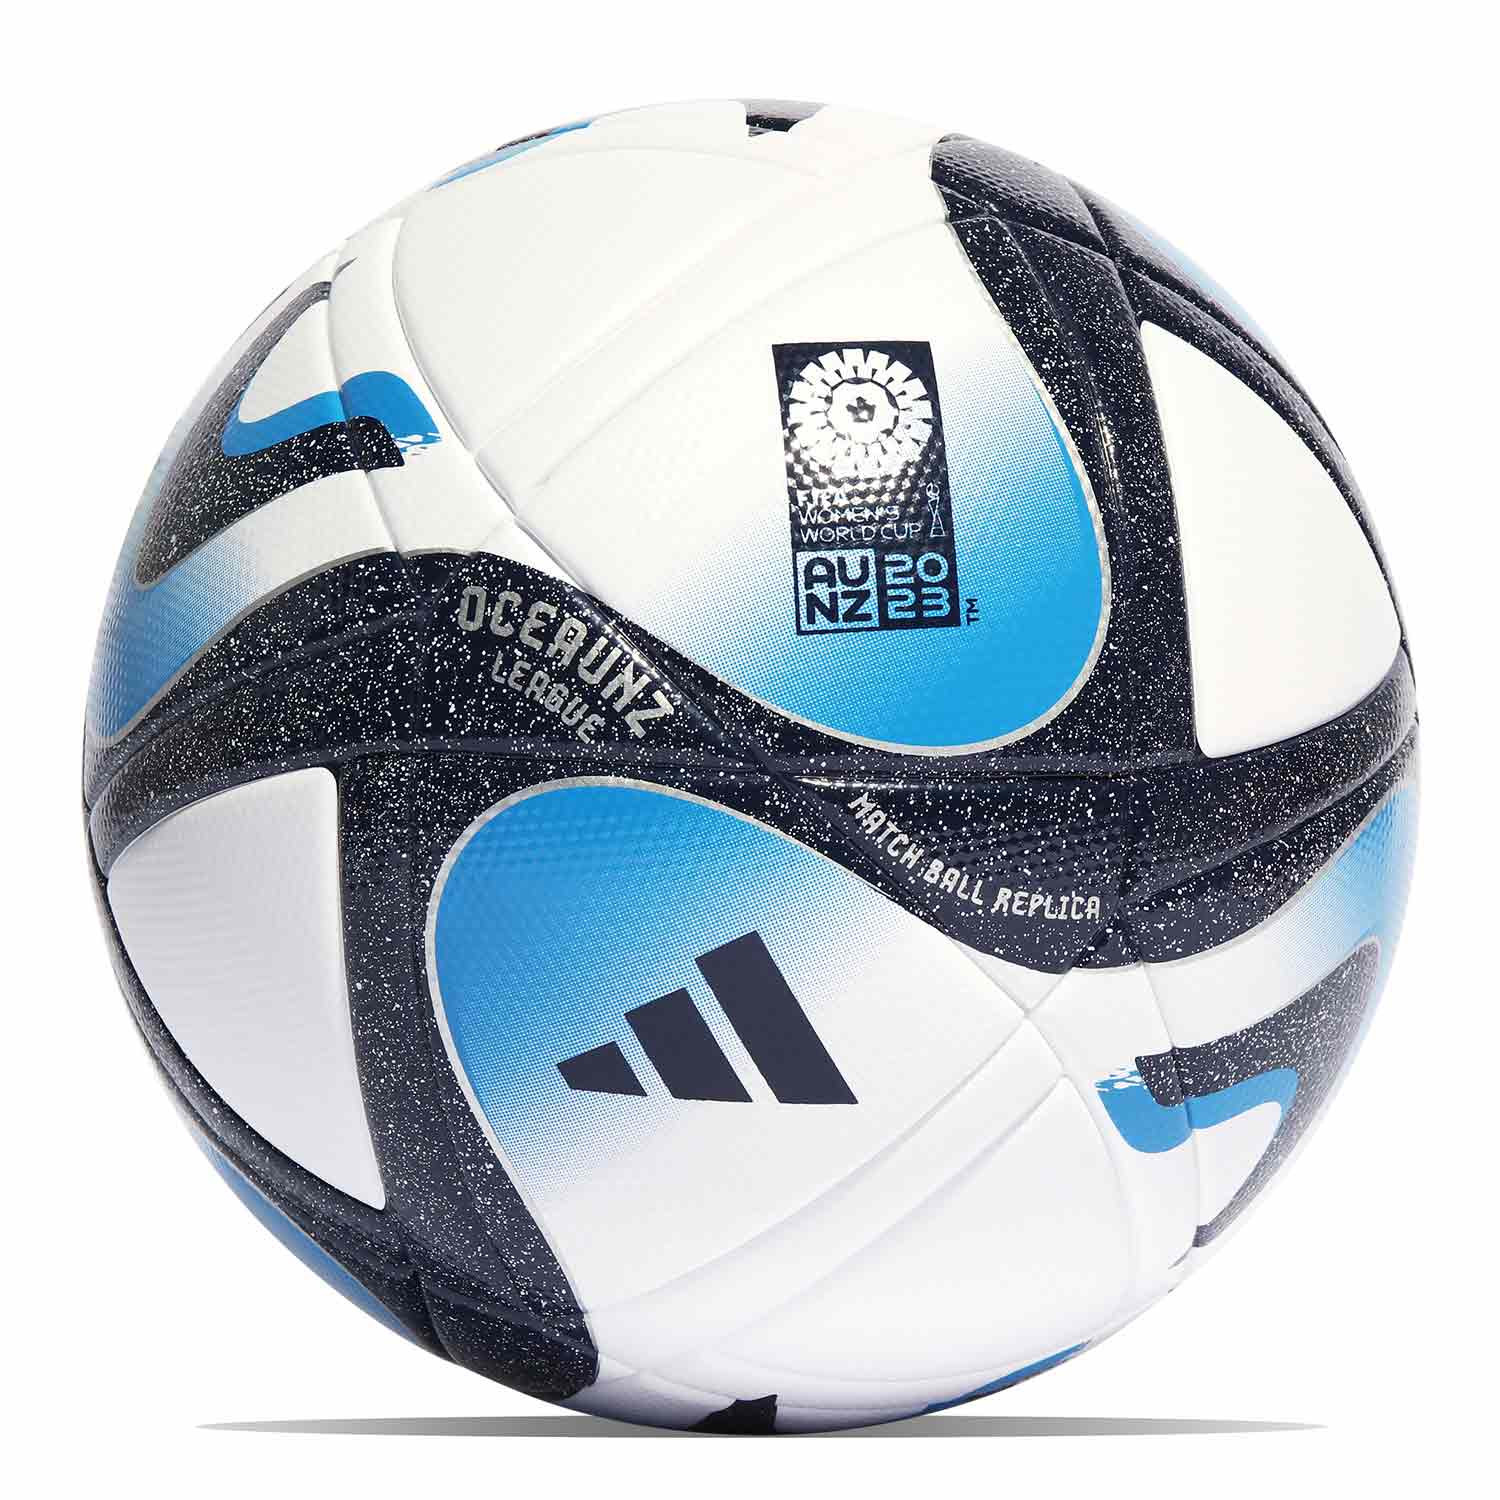 Balón de Fútbol Adidas Federación Española Fútbol Competition